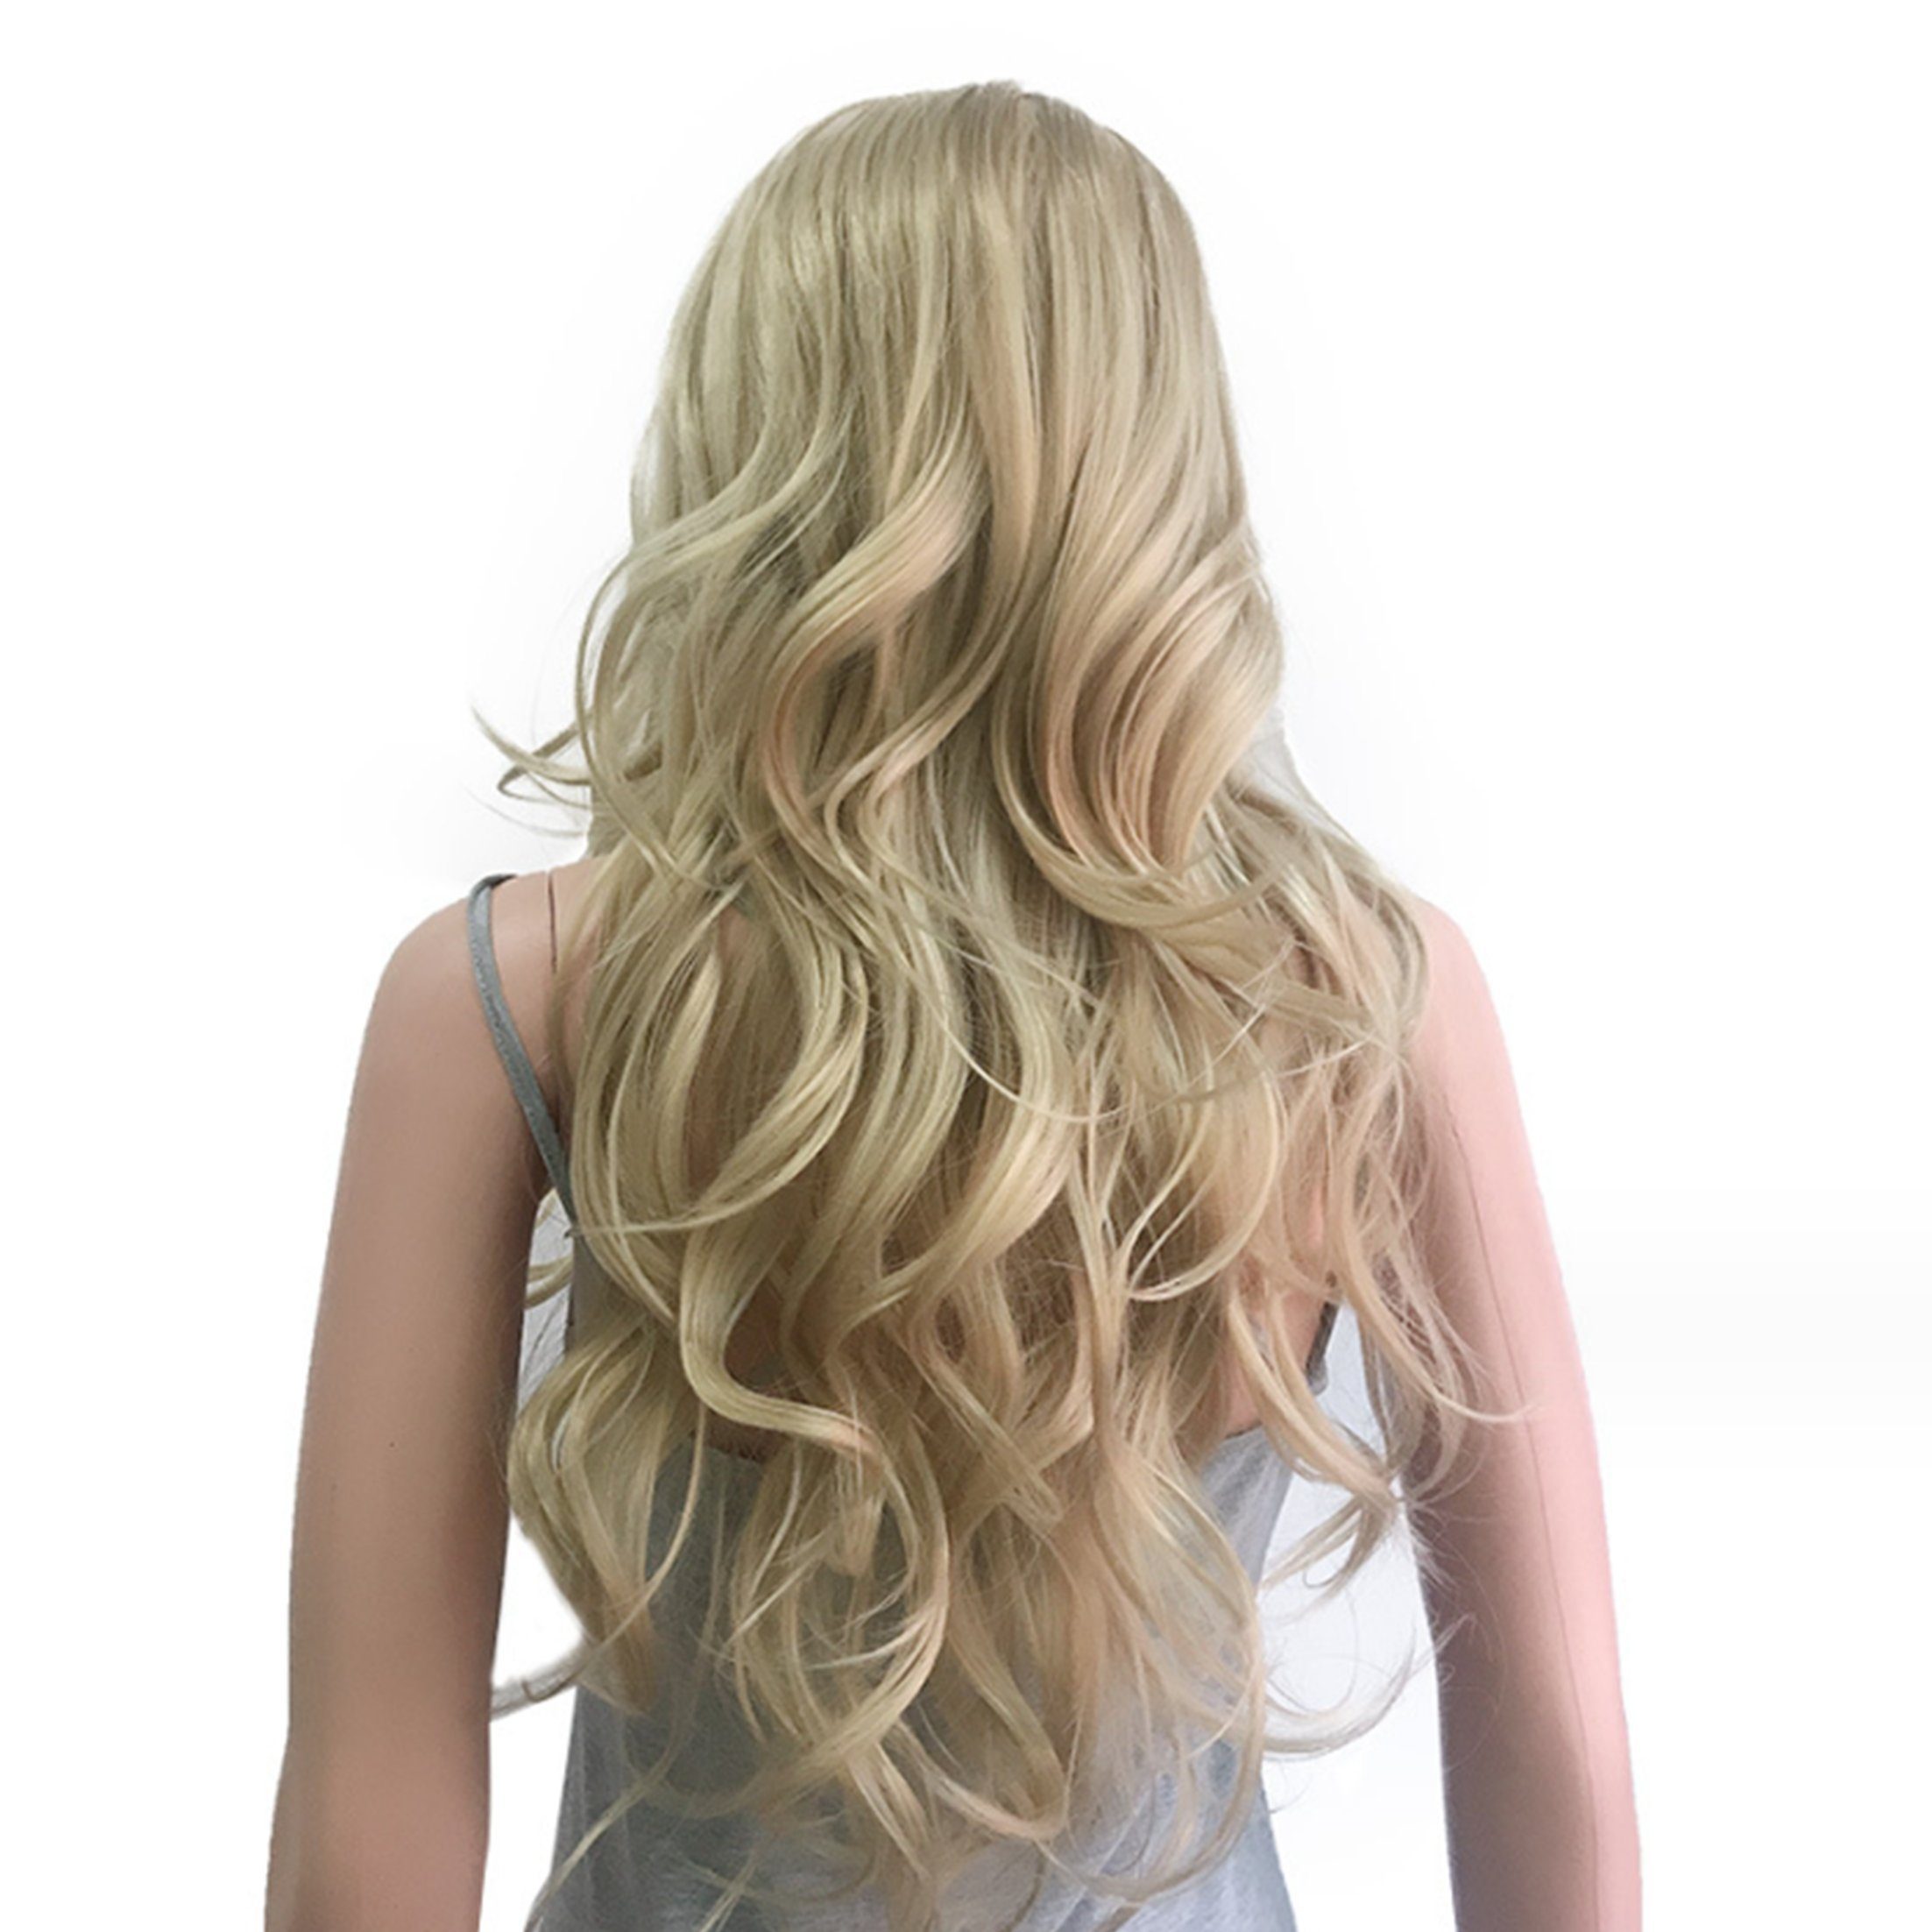 Scheiffy Kunsthaar-Extension Beach Wave blonde Haare,lockige Perücke,19.68  inch,Kapuzenperücke